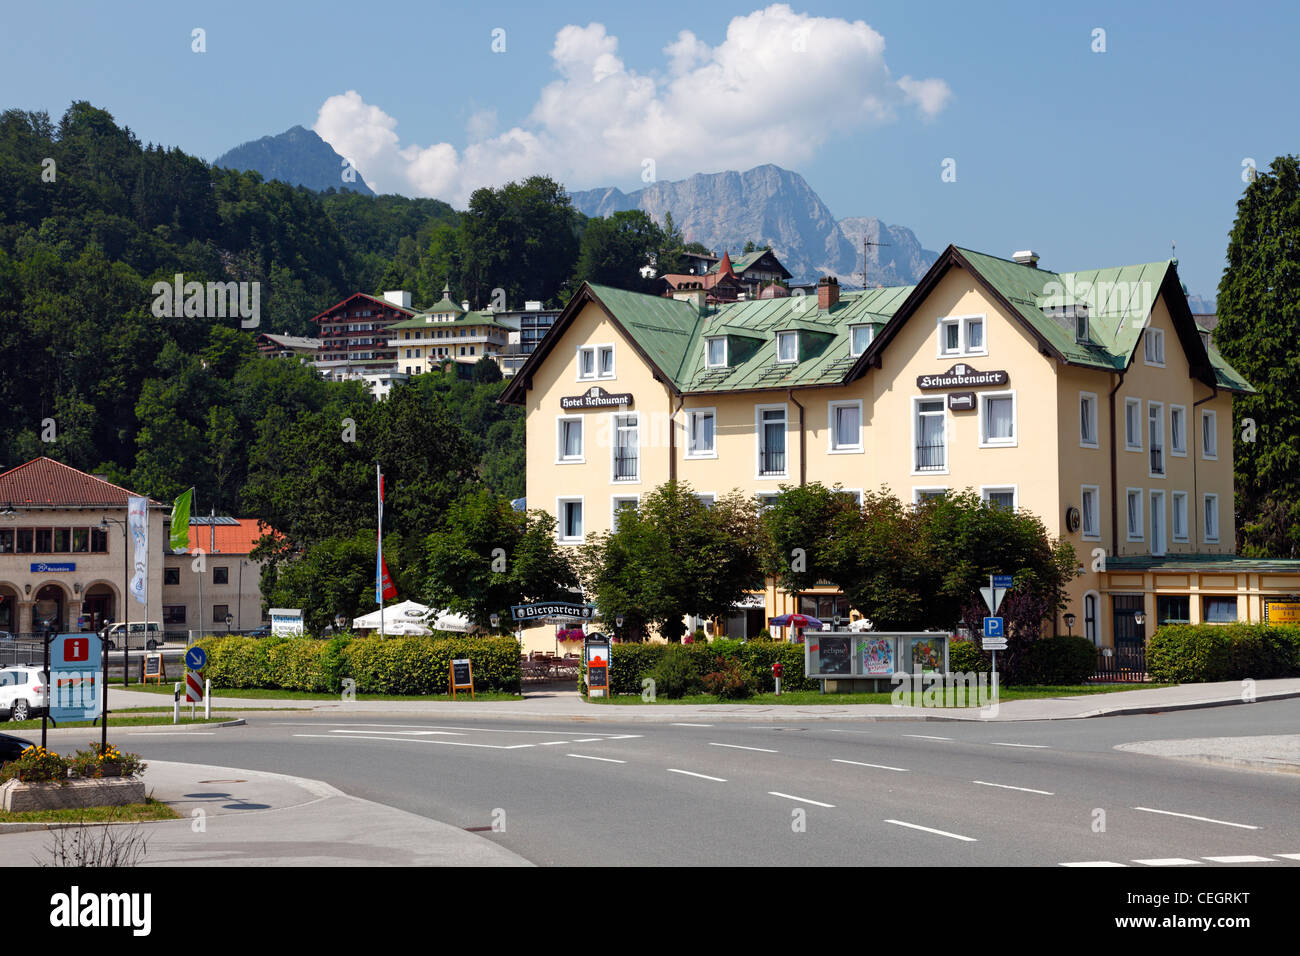 Schwabenwirt Biergarten, beer garden, in  town centre of mountainous Berchtesgaden, Bavaria, Germany. Stock Photo